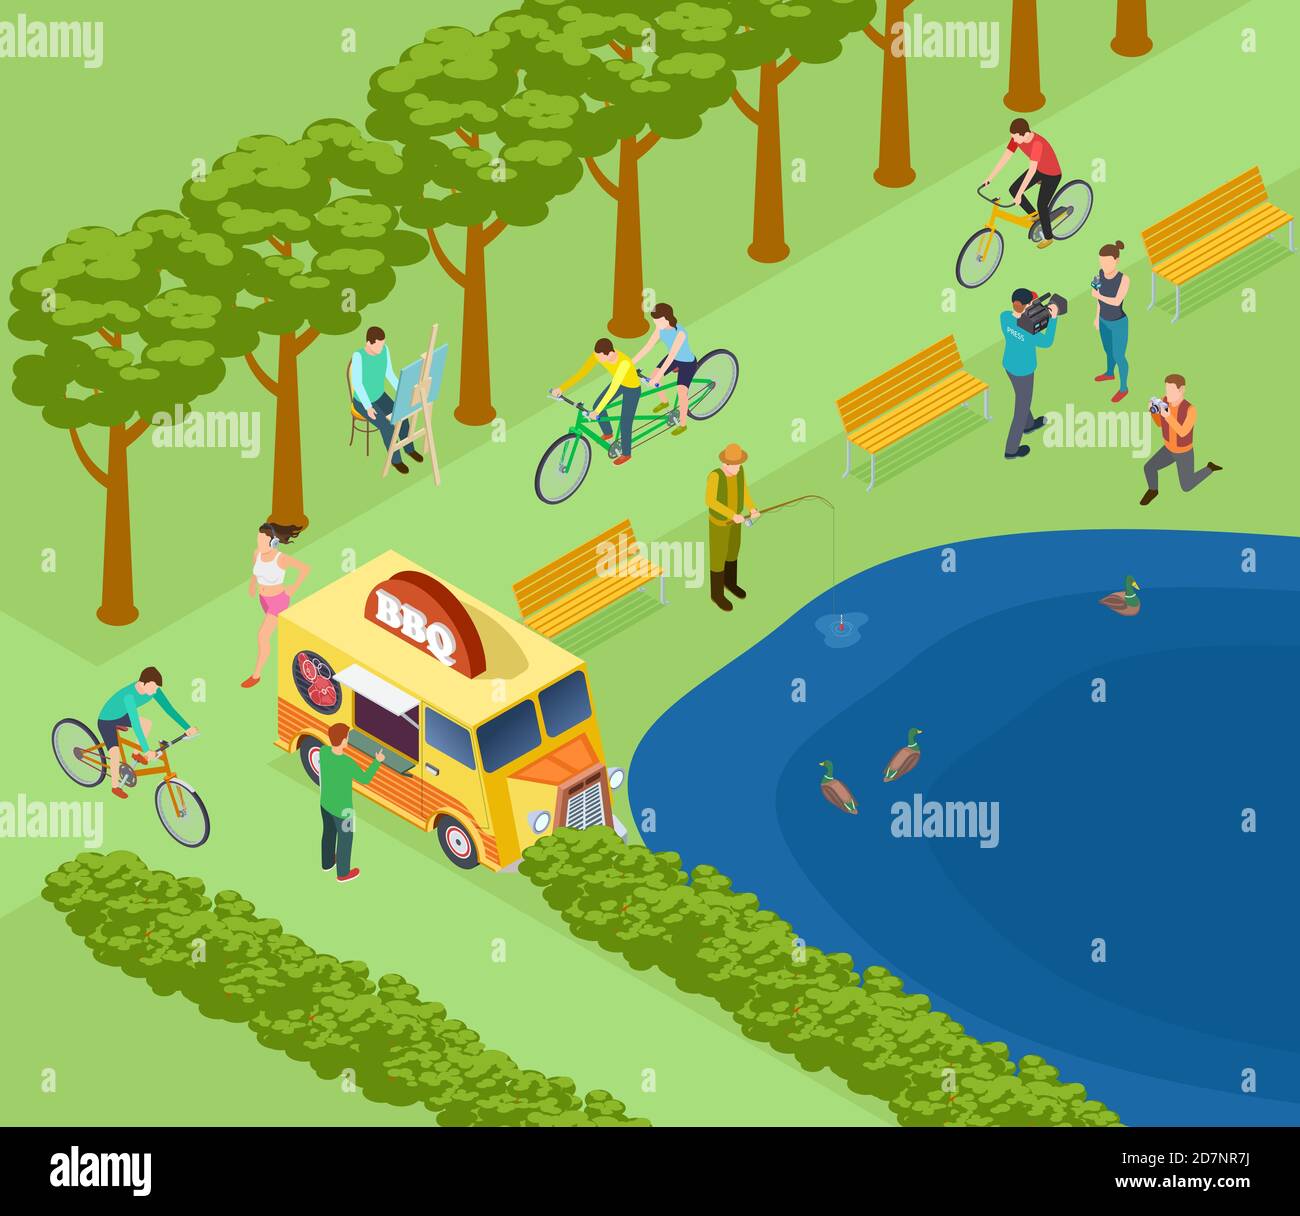 Les gens se détendent dans le parc, font du vélo, photographient et pêchent, mangent et font du jogging. Concept d'illustration vectorielle de parc vert isométrique Illustration de Vecteur